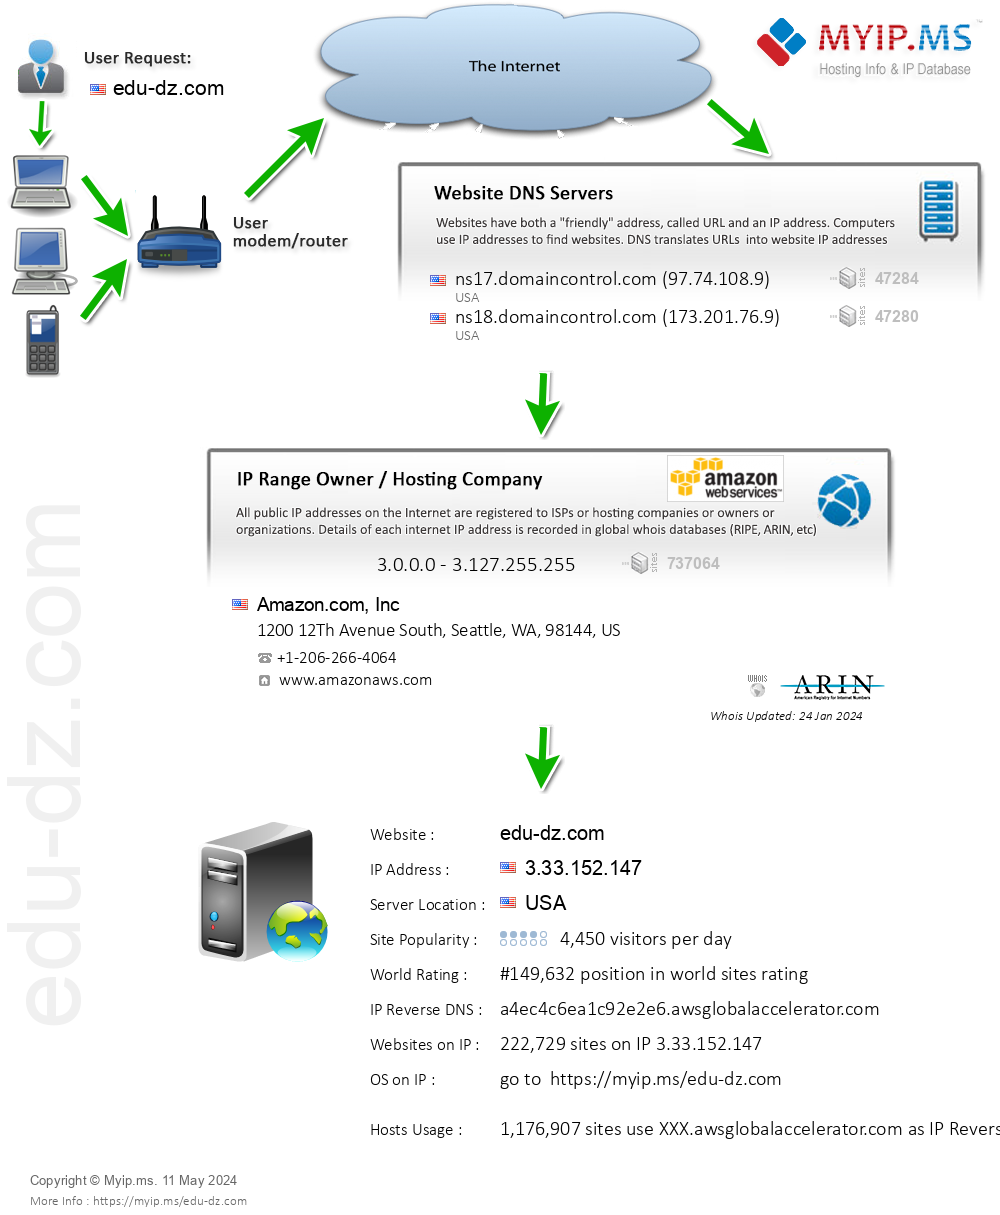 Edu-dz.com - Website Hosting Visual IP Diagram